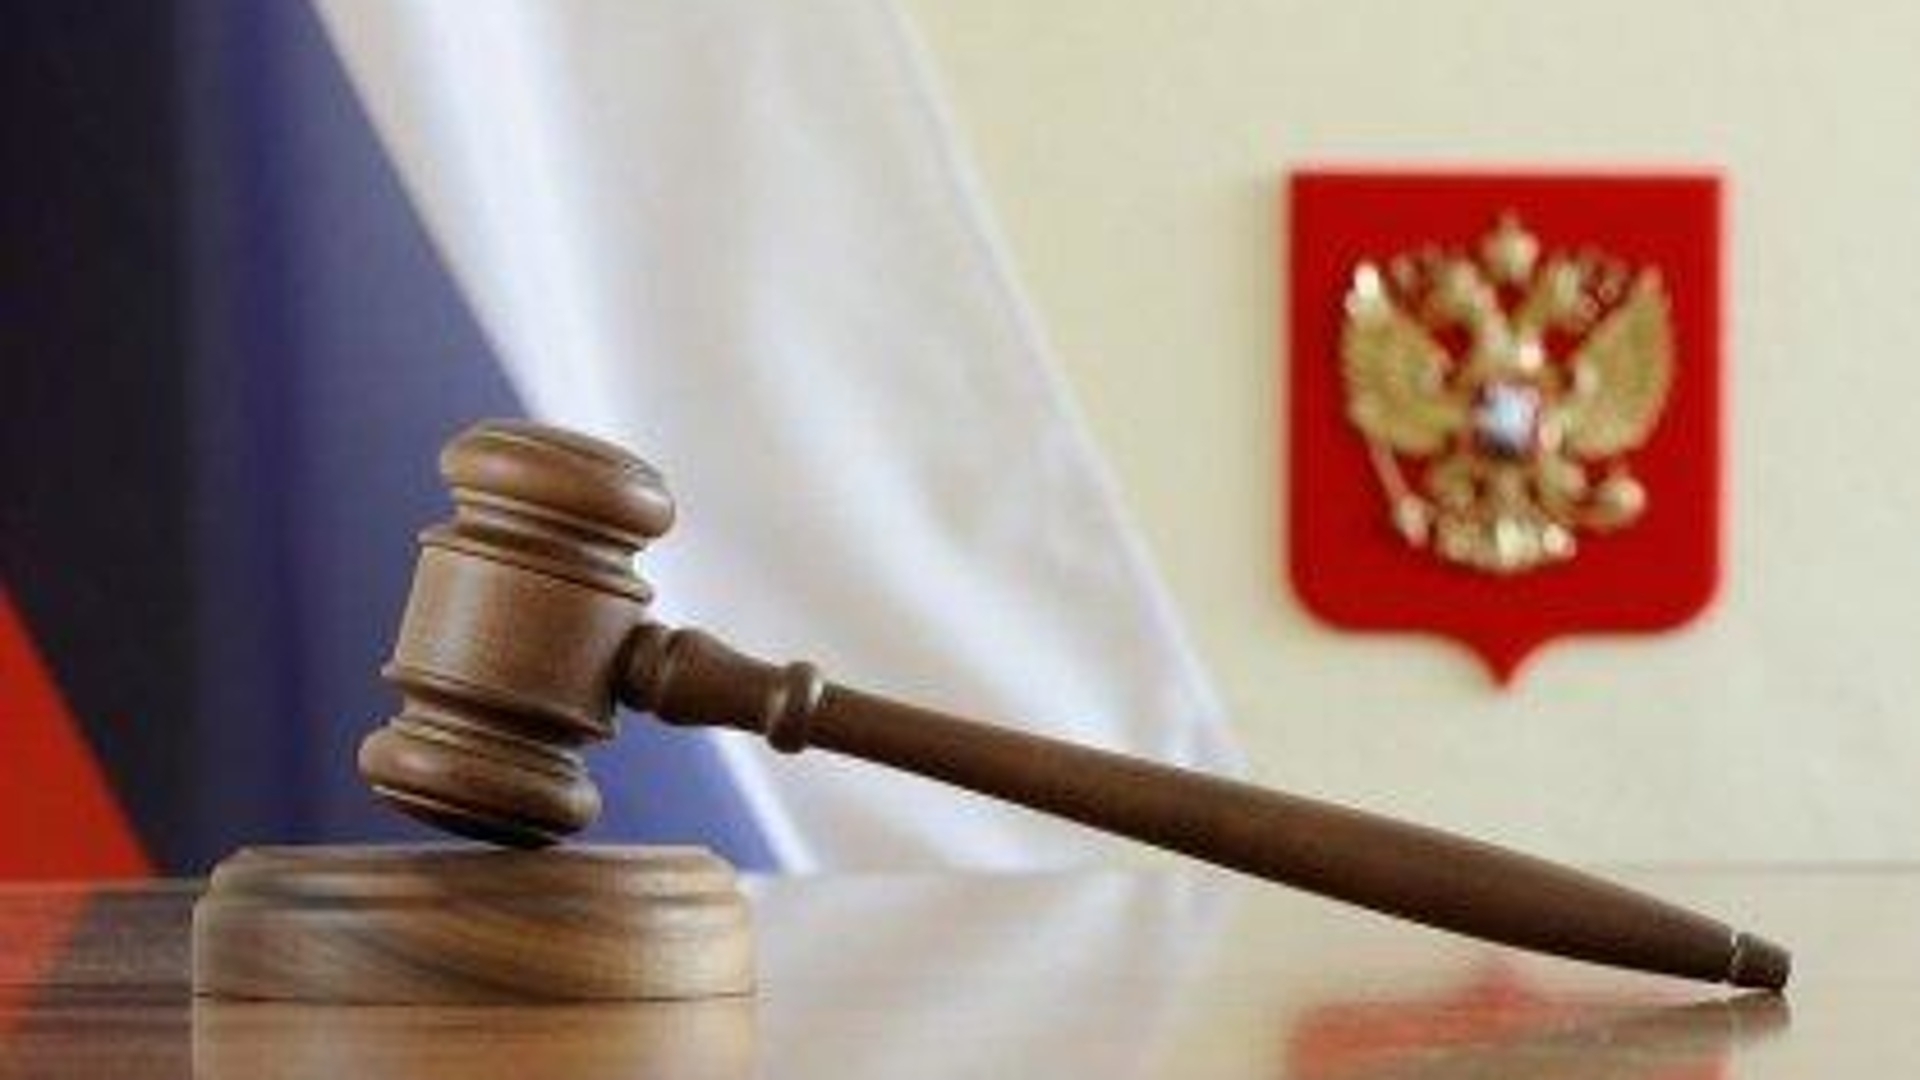 Исполнитель отказался от контракта раньше госзаказчика — суды не нашли оснований для РНП